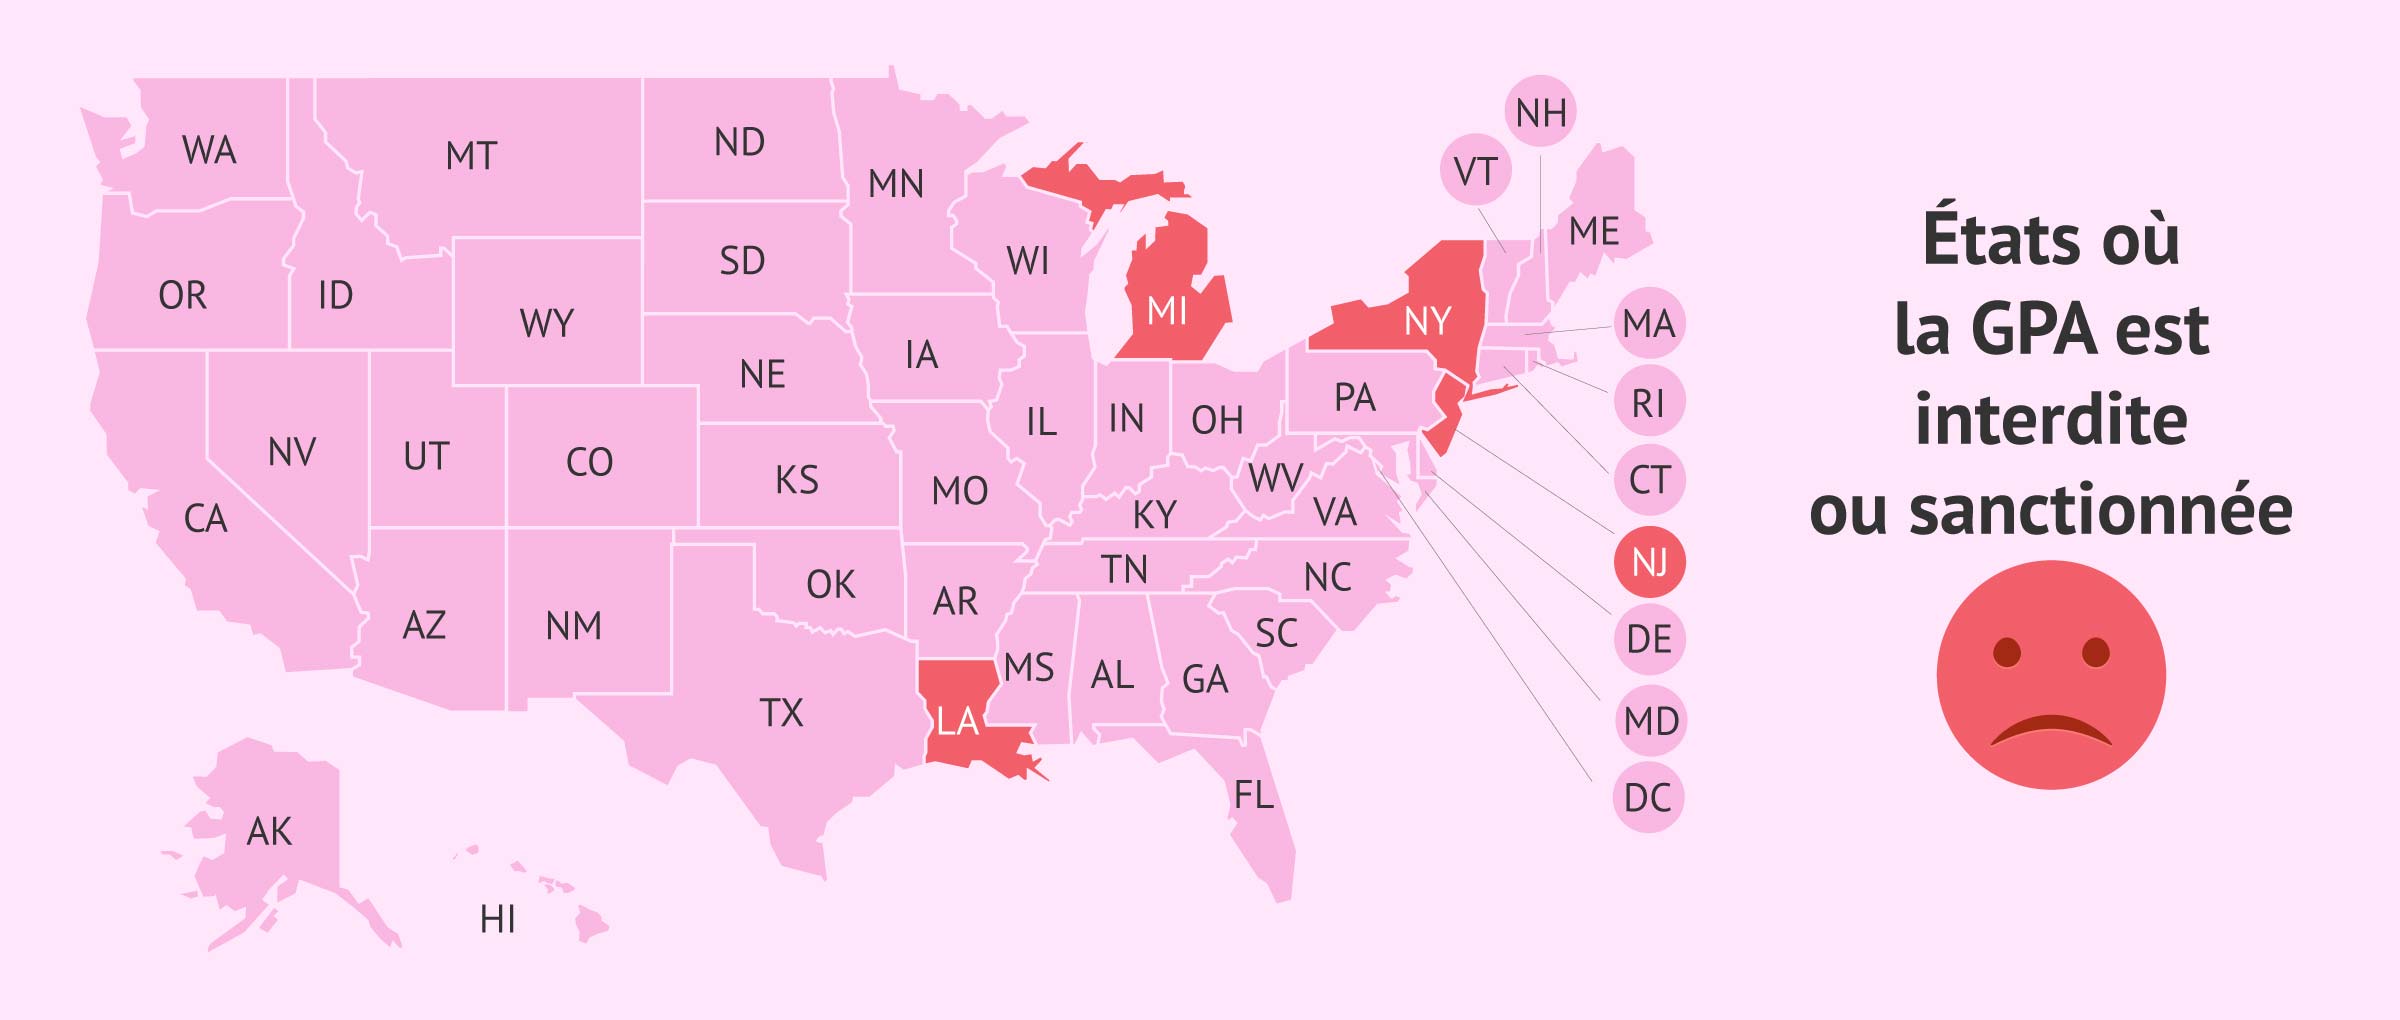 Carte des États des USA où la GPA est restreinte ou pénalisée